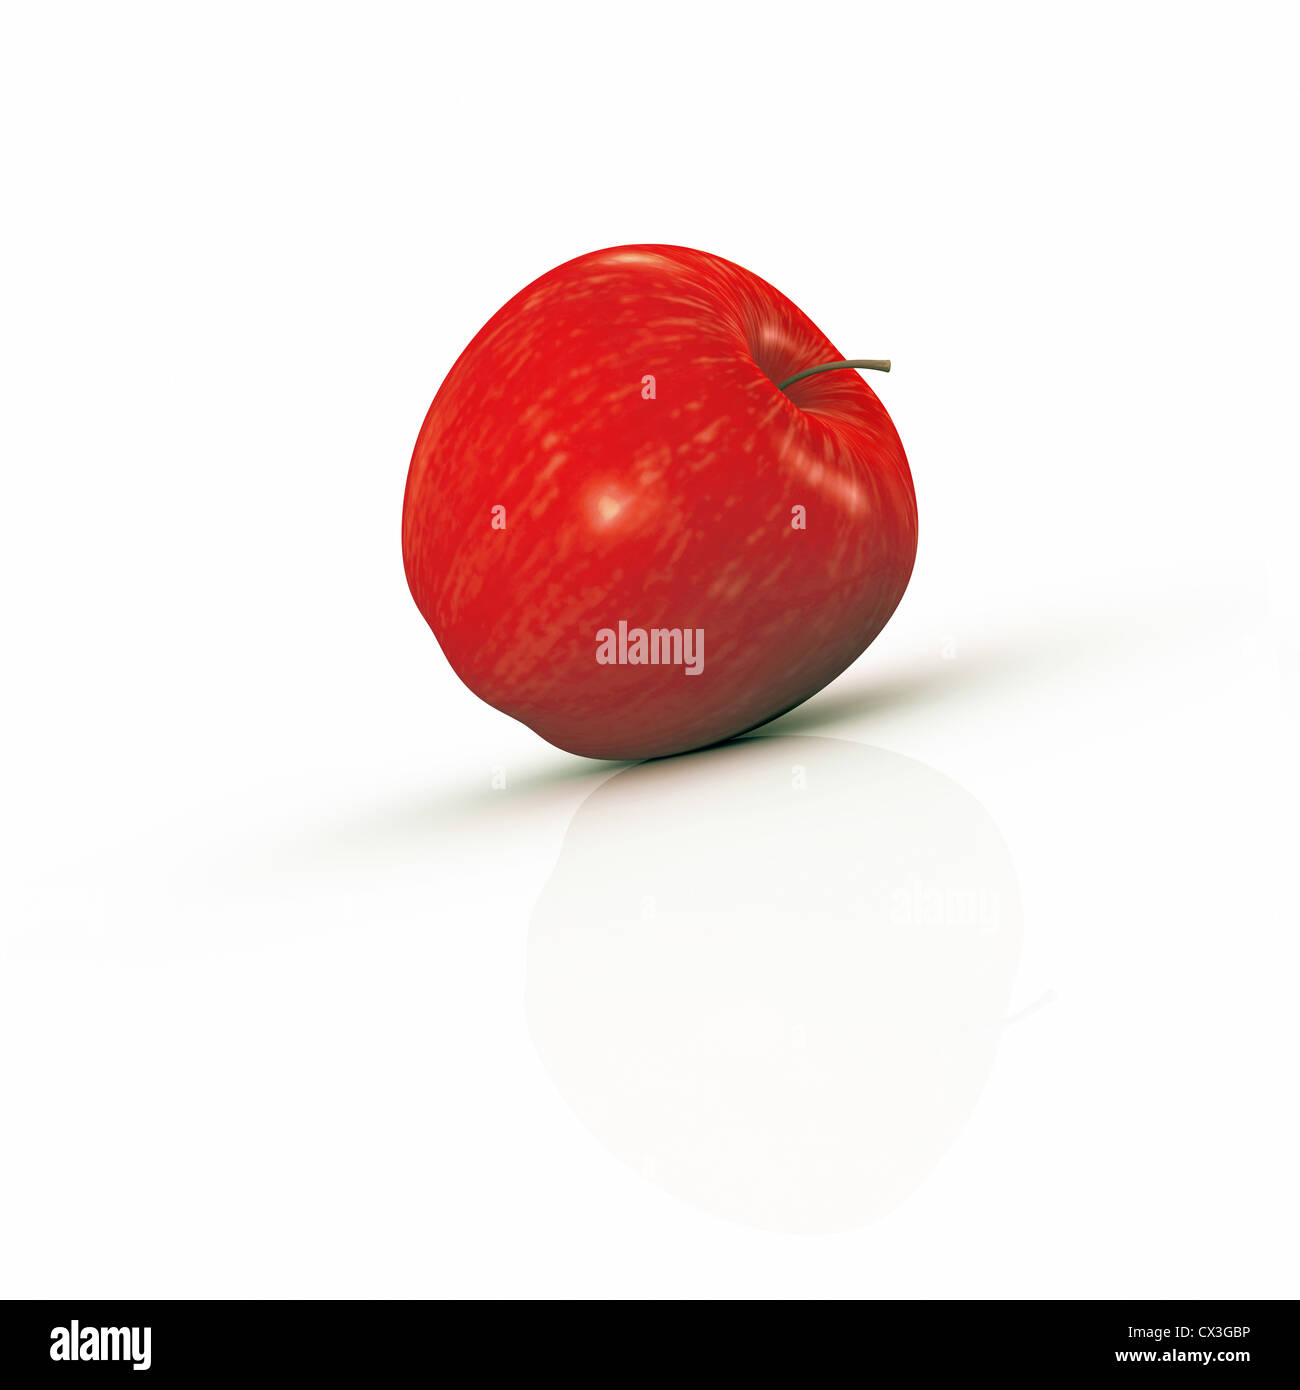 Frischen roten Apfel (Braeburn oder Cox Orange) mit vielen Vitaminen auf weißem Hintergrund, close-up. -Frischer Roter Apfel Auf Weiß- Stockfoto